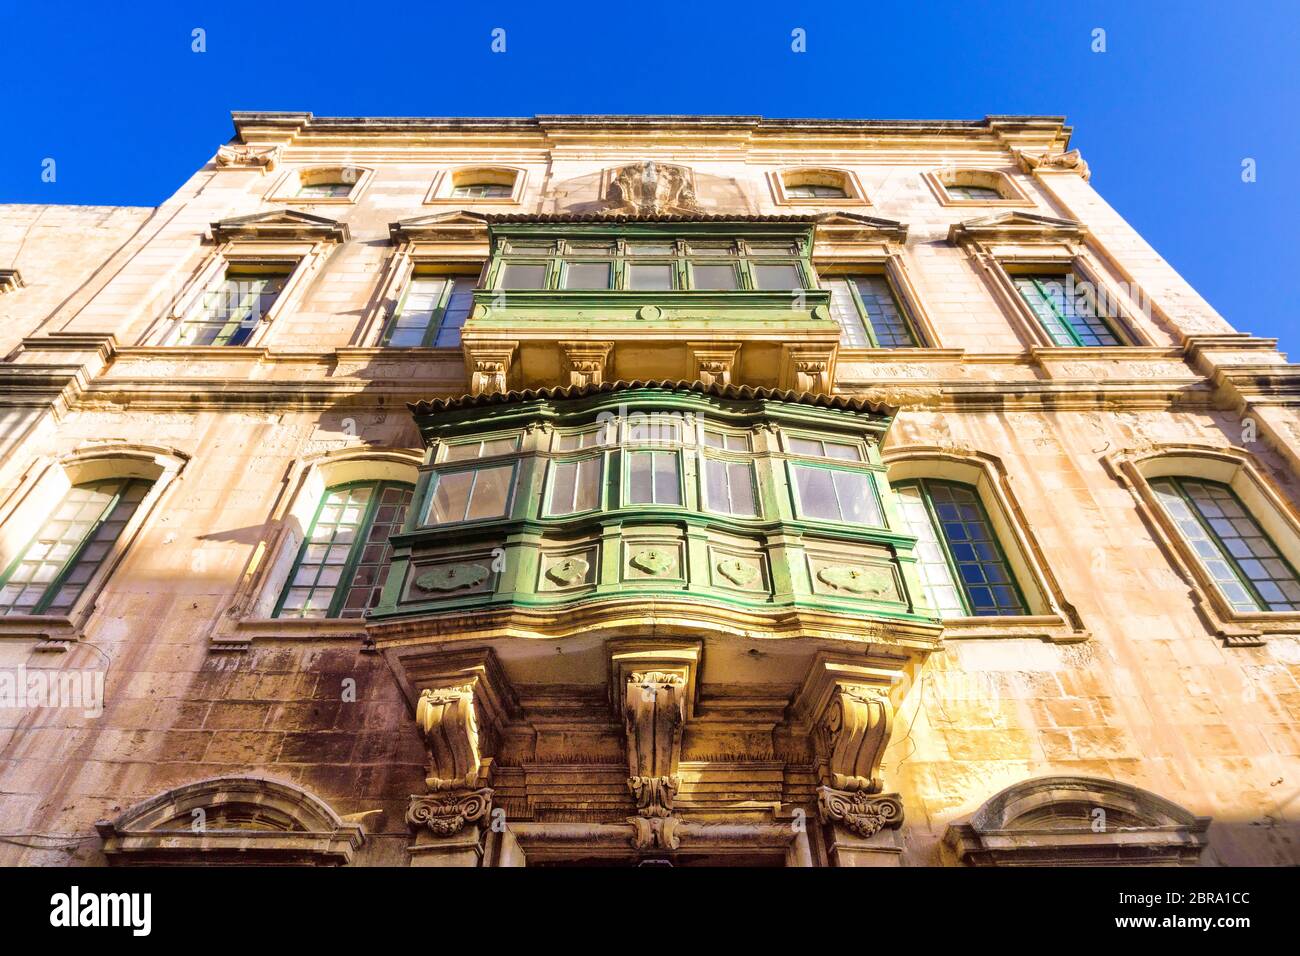 Golden light on the buildings in Valletta, Malta Stock Photo